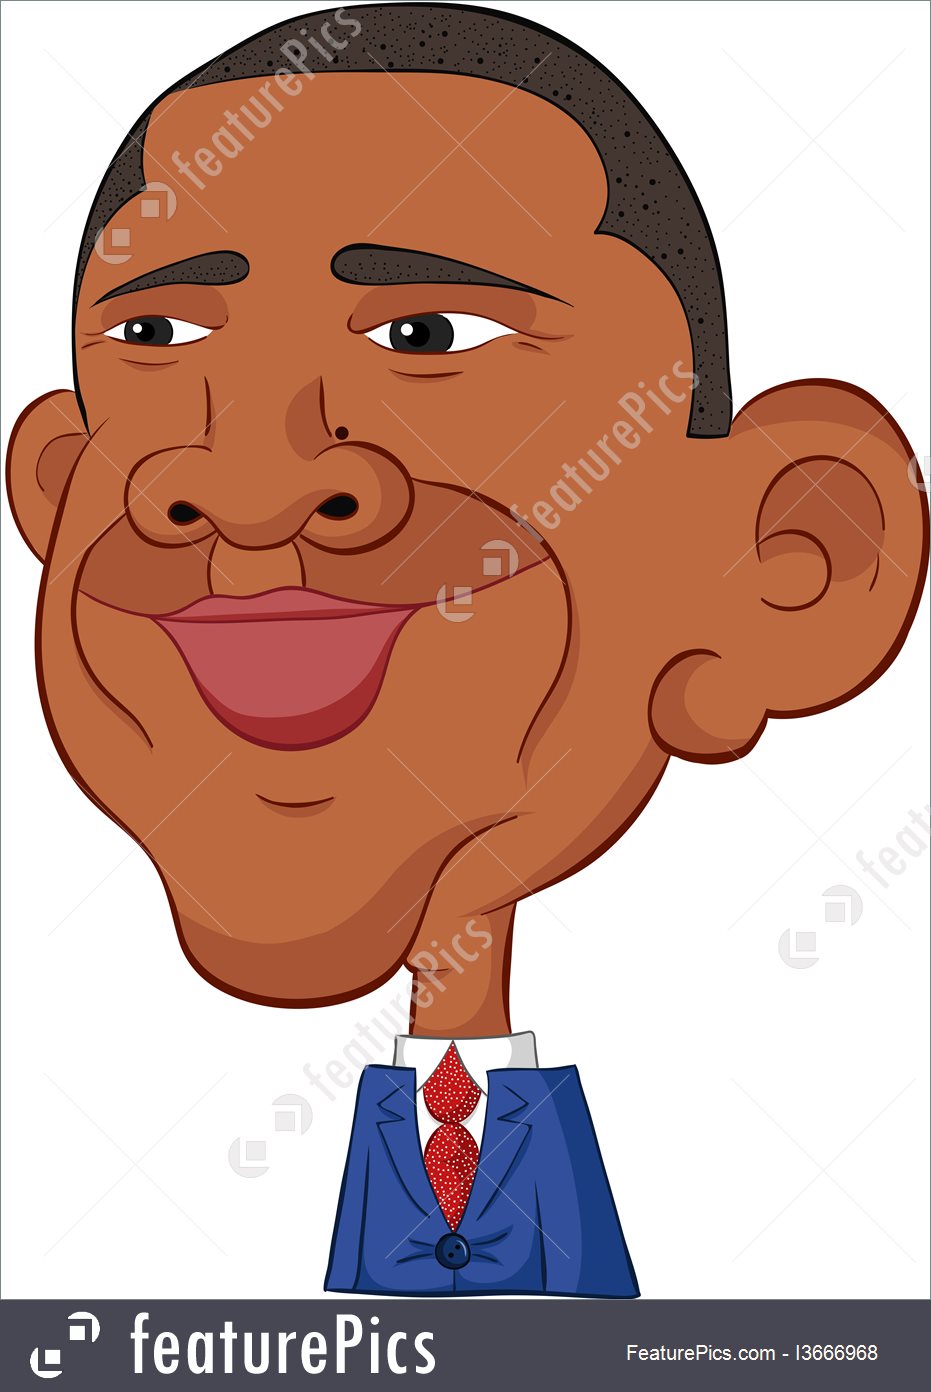 Barack Obama line drawing - c